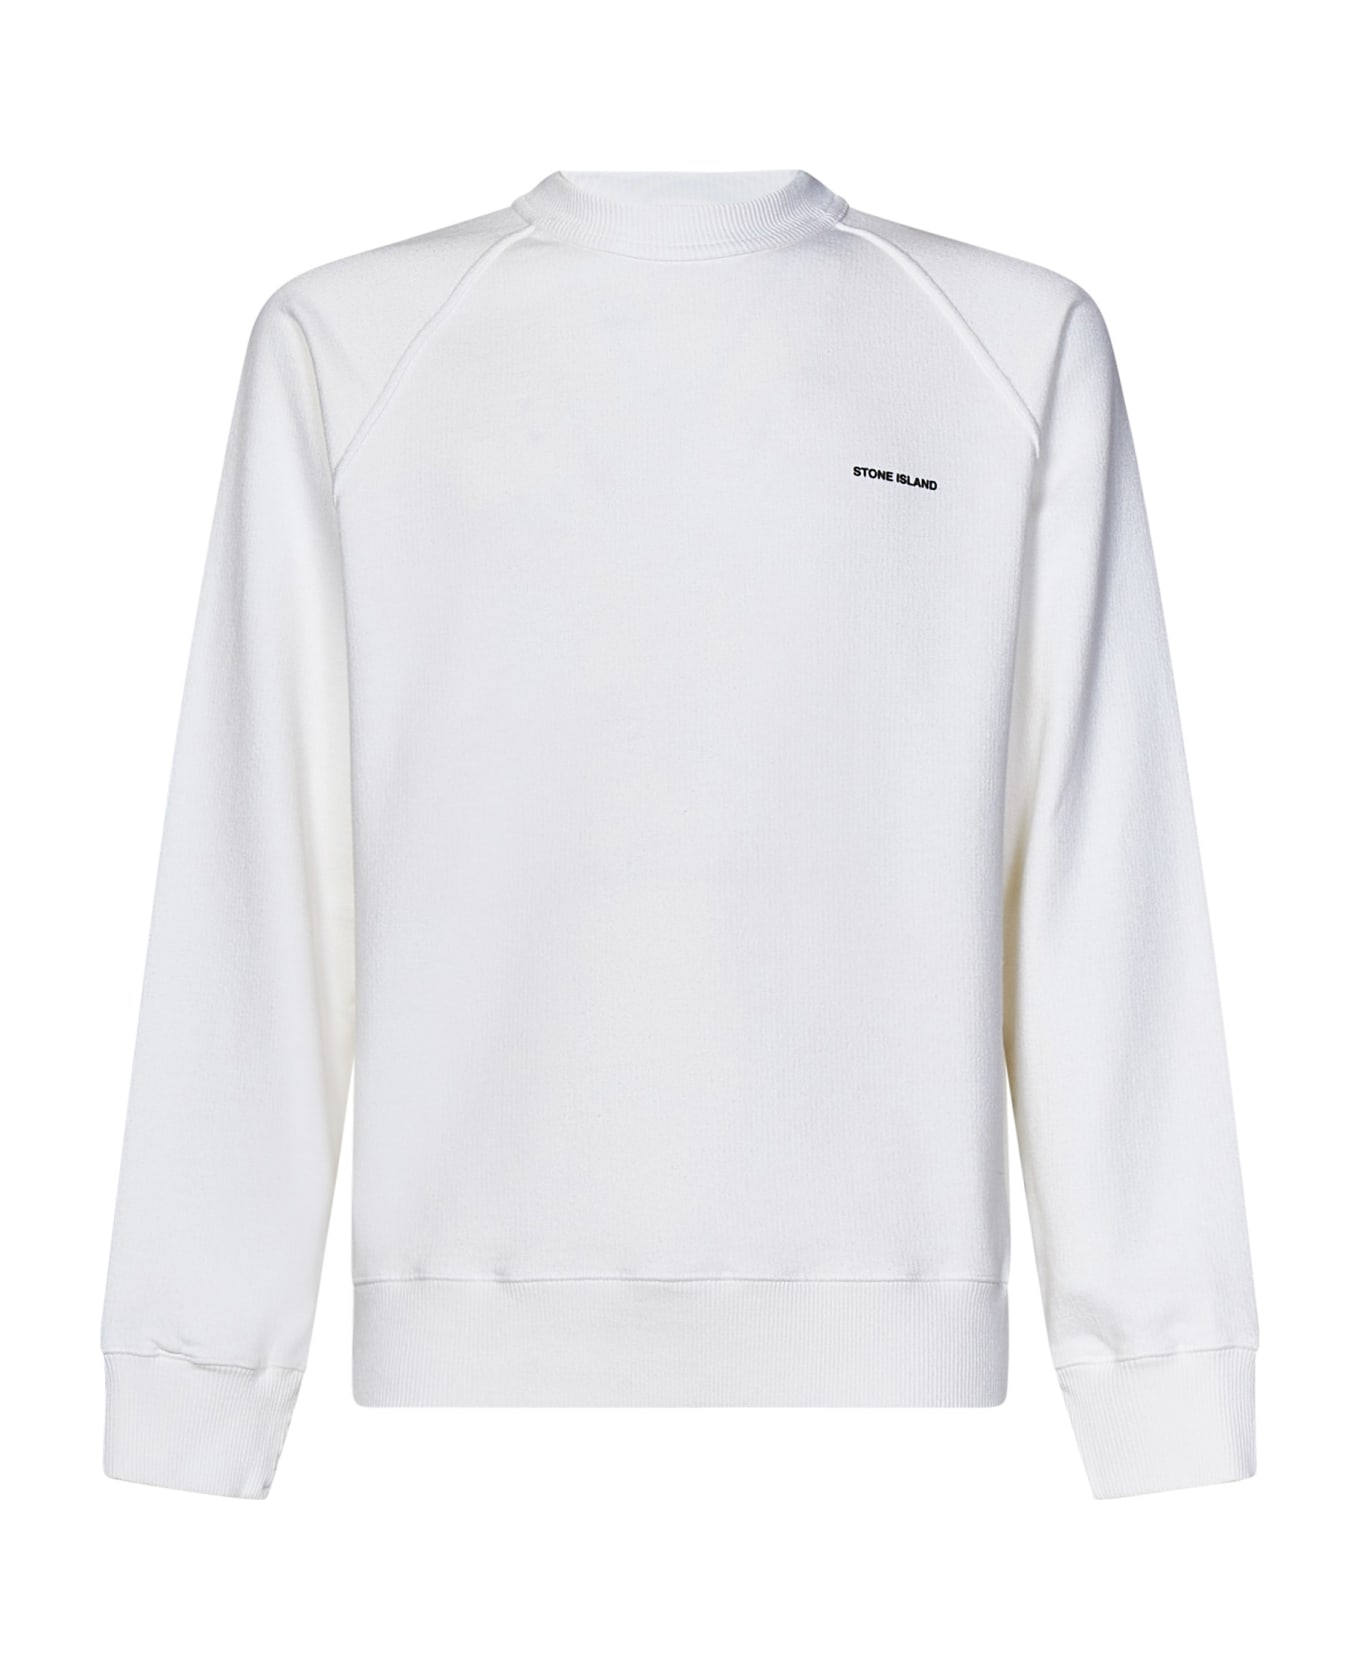 Stone Island Sweatshirt - White